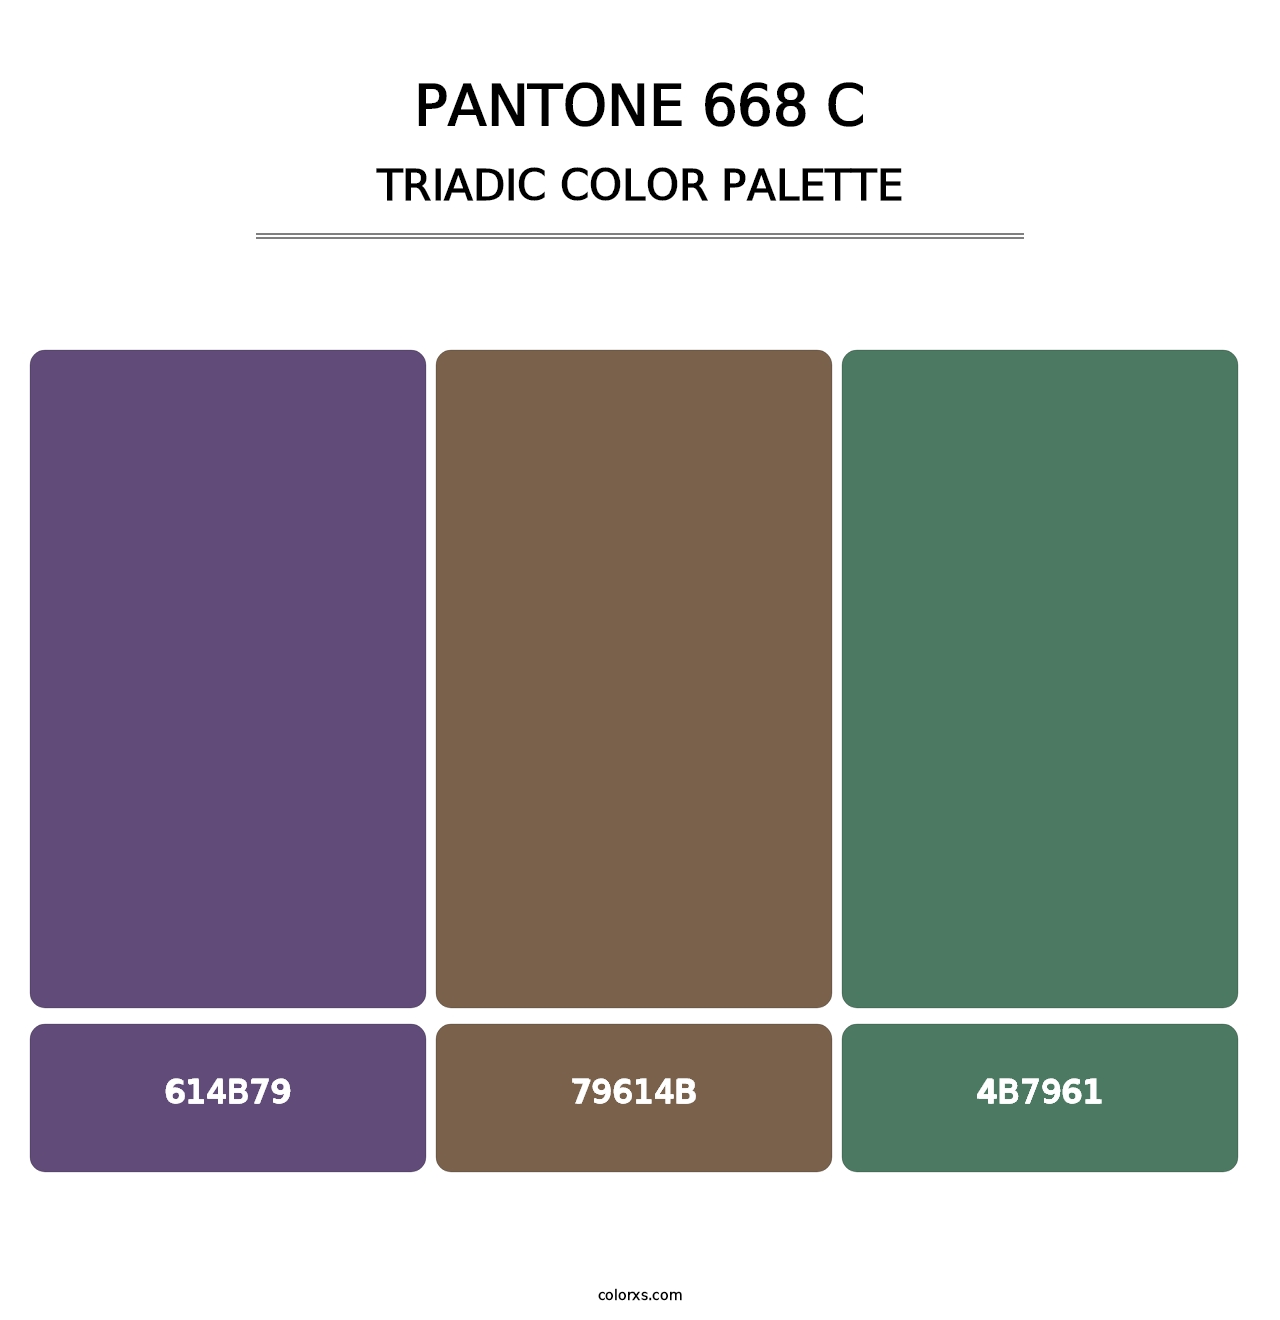 PANTONE 668 C - Triadic Color Palette